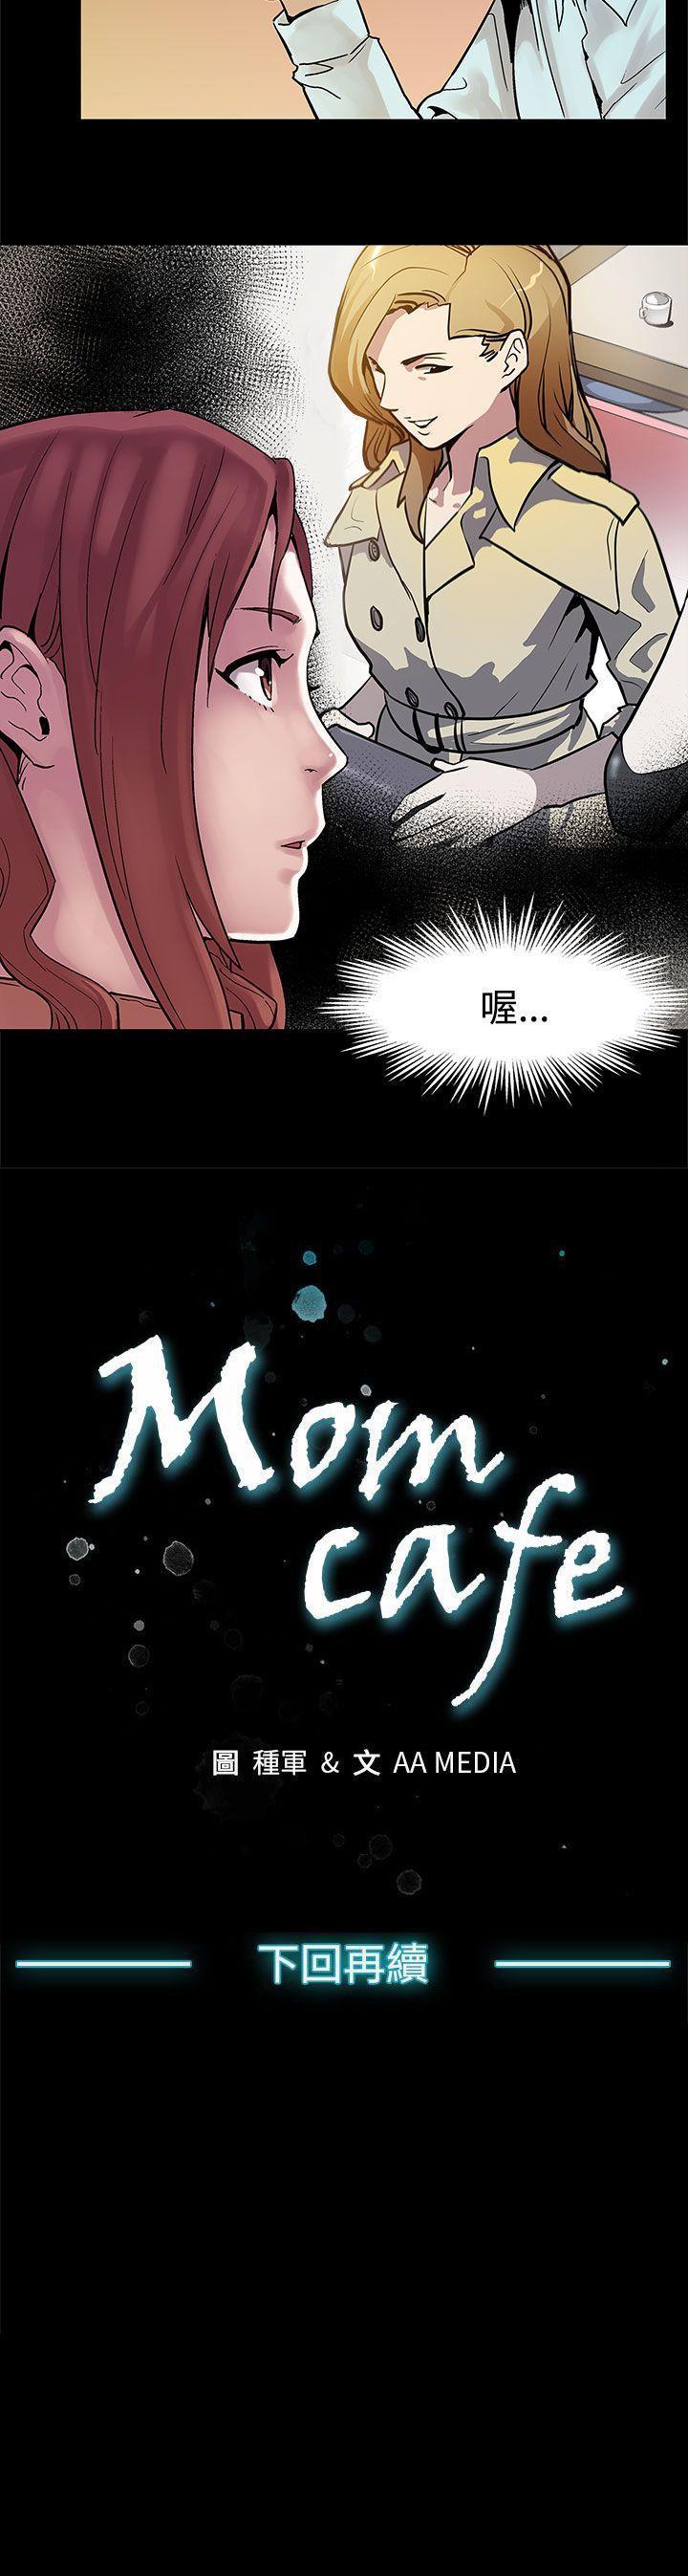 Mom cafe 1-72 118